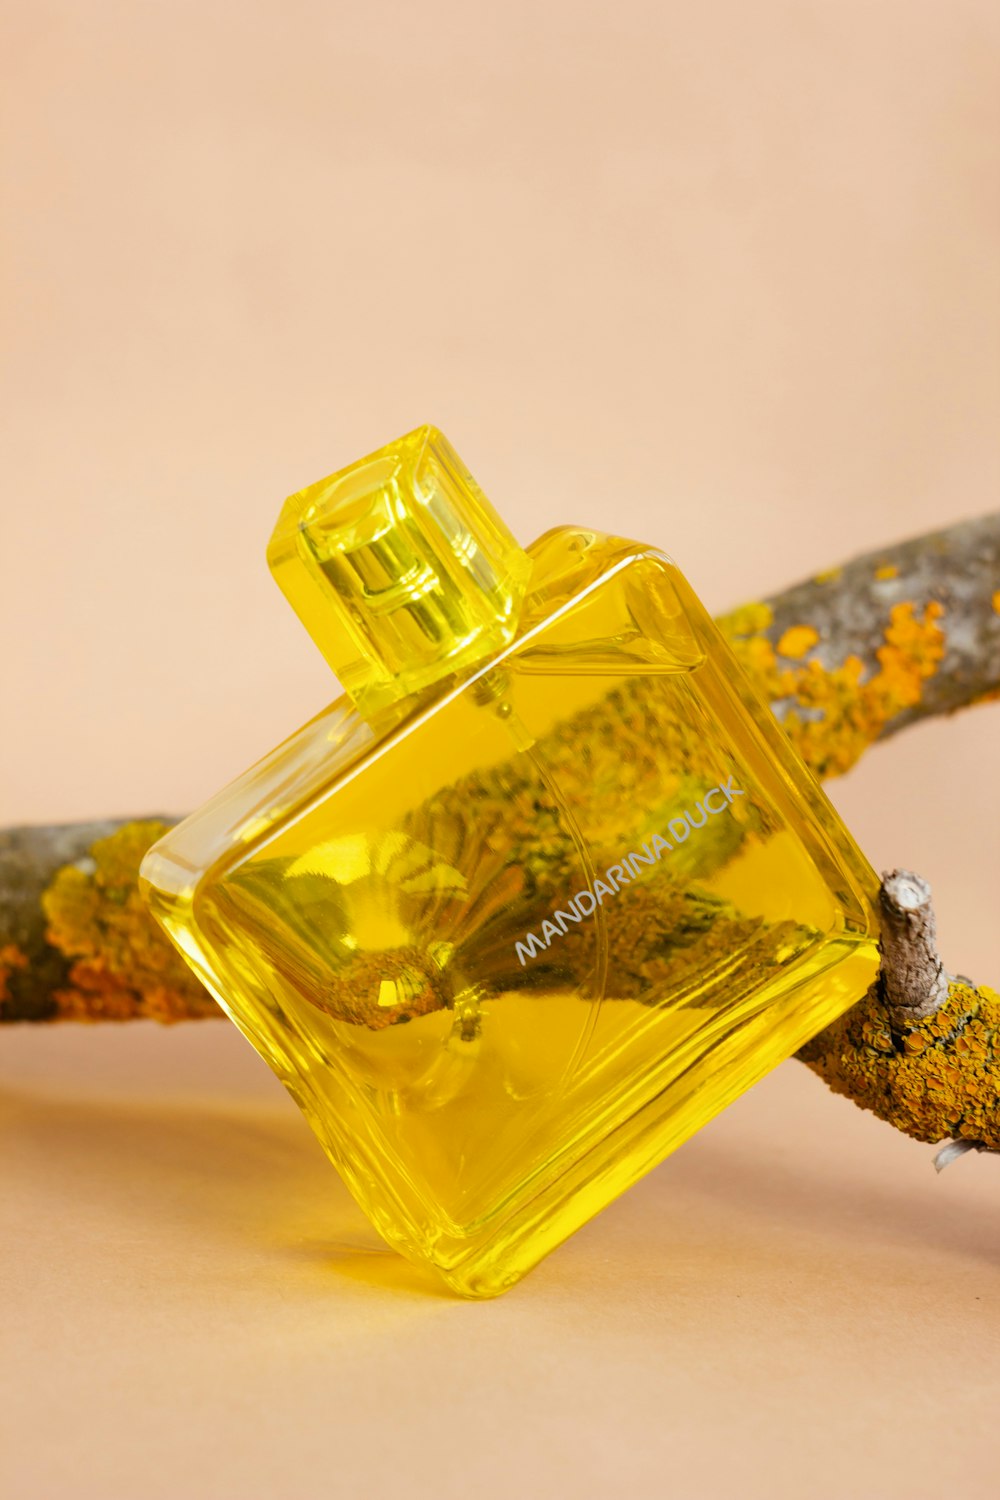 un frasco de perfume en lo alto de una rama